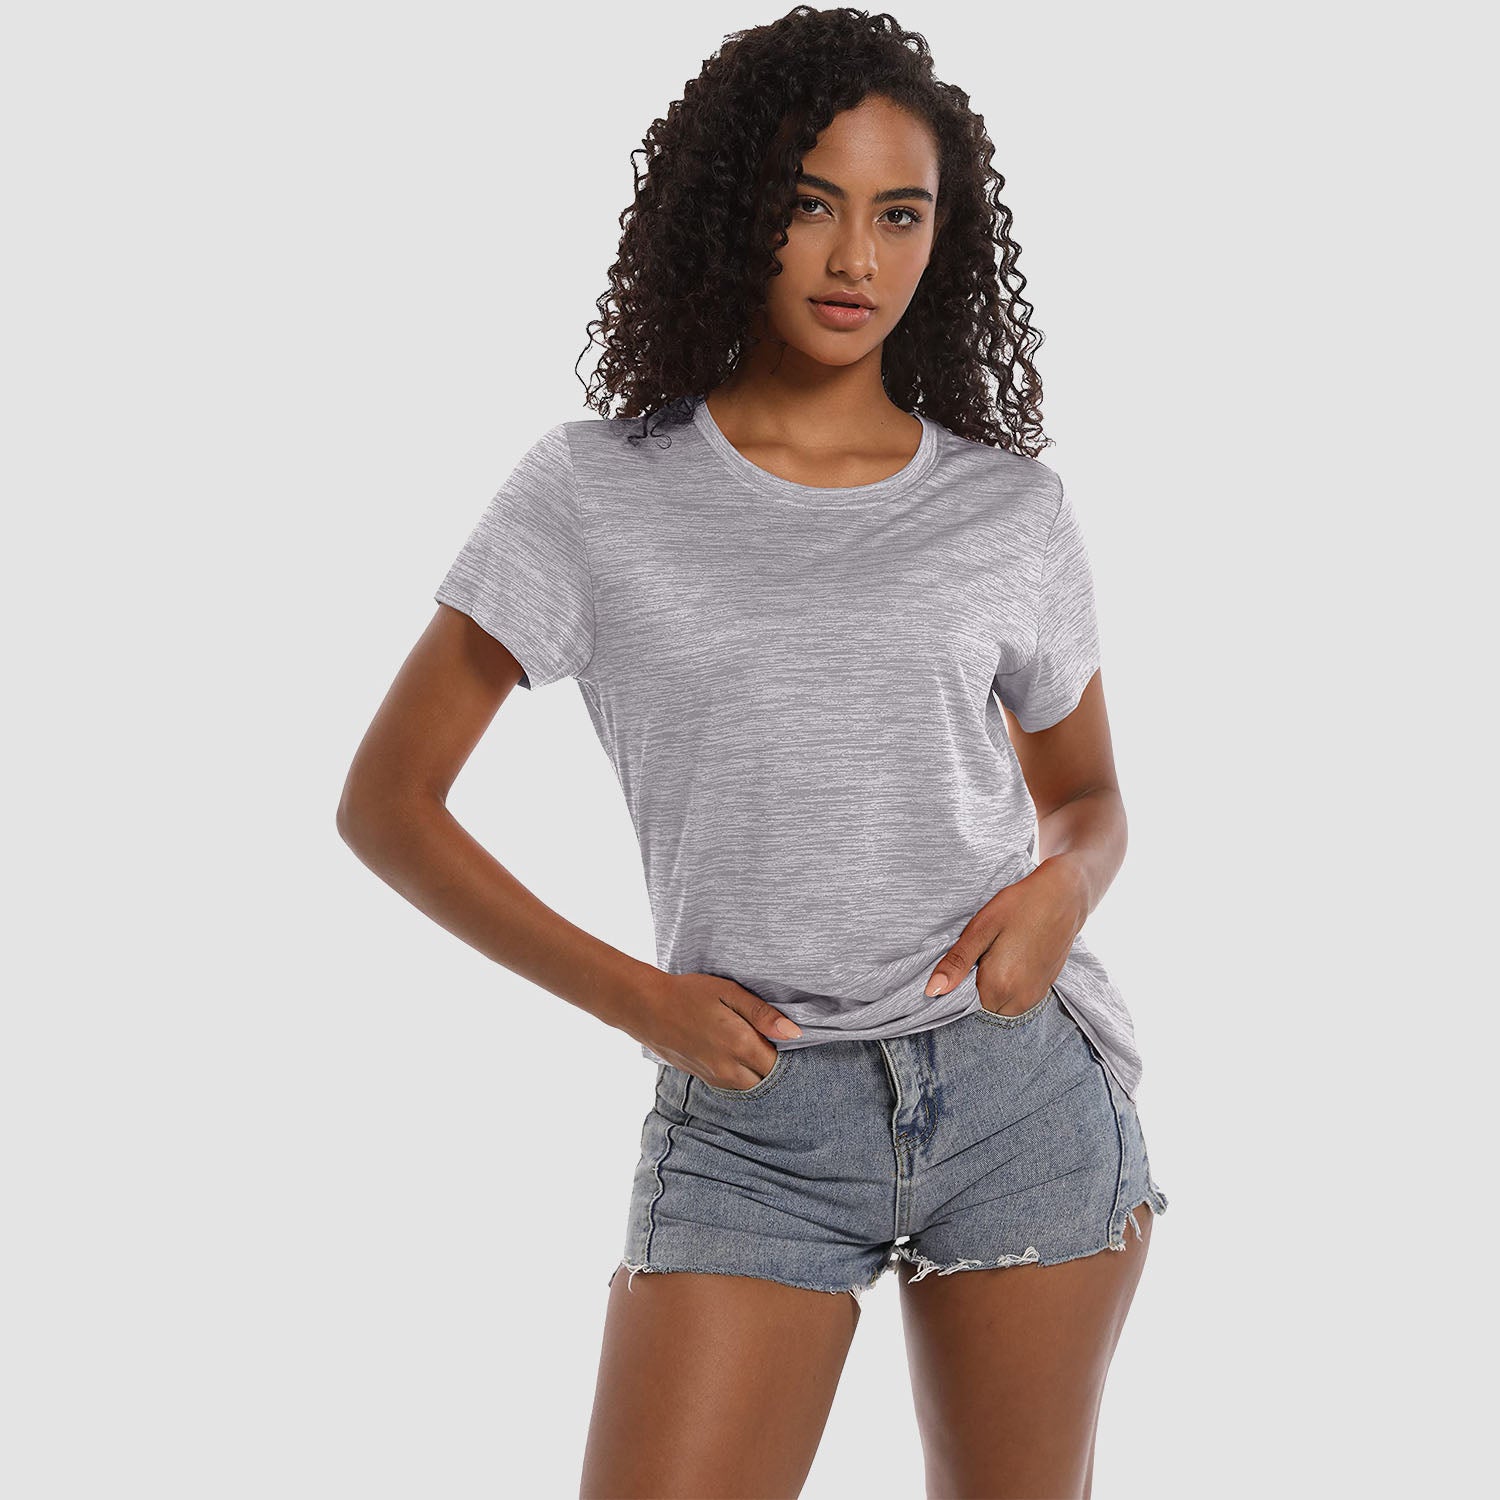 Women's Workout T-shirts Crewneck Short Sleeve Shirt Lightweight Soft Tops for Sports